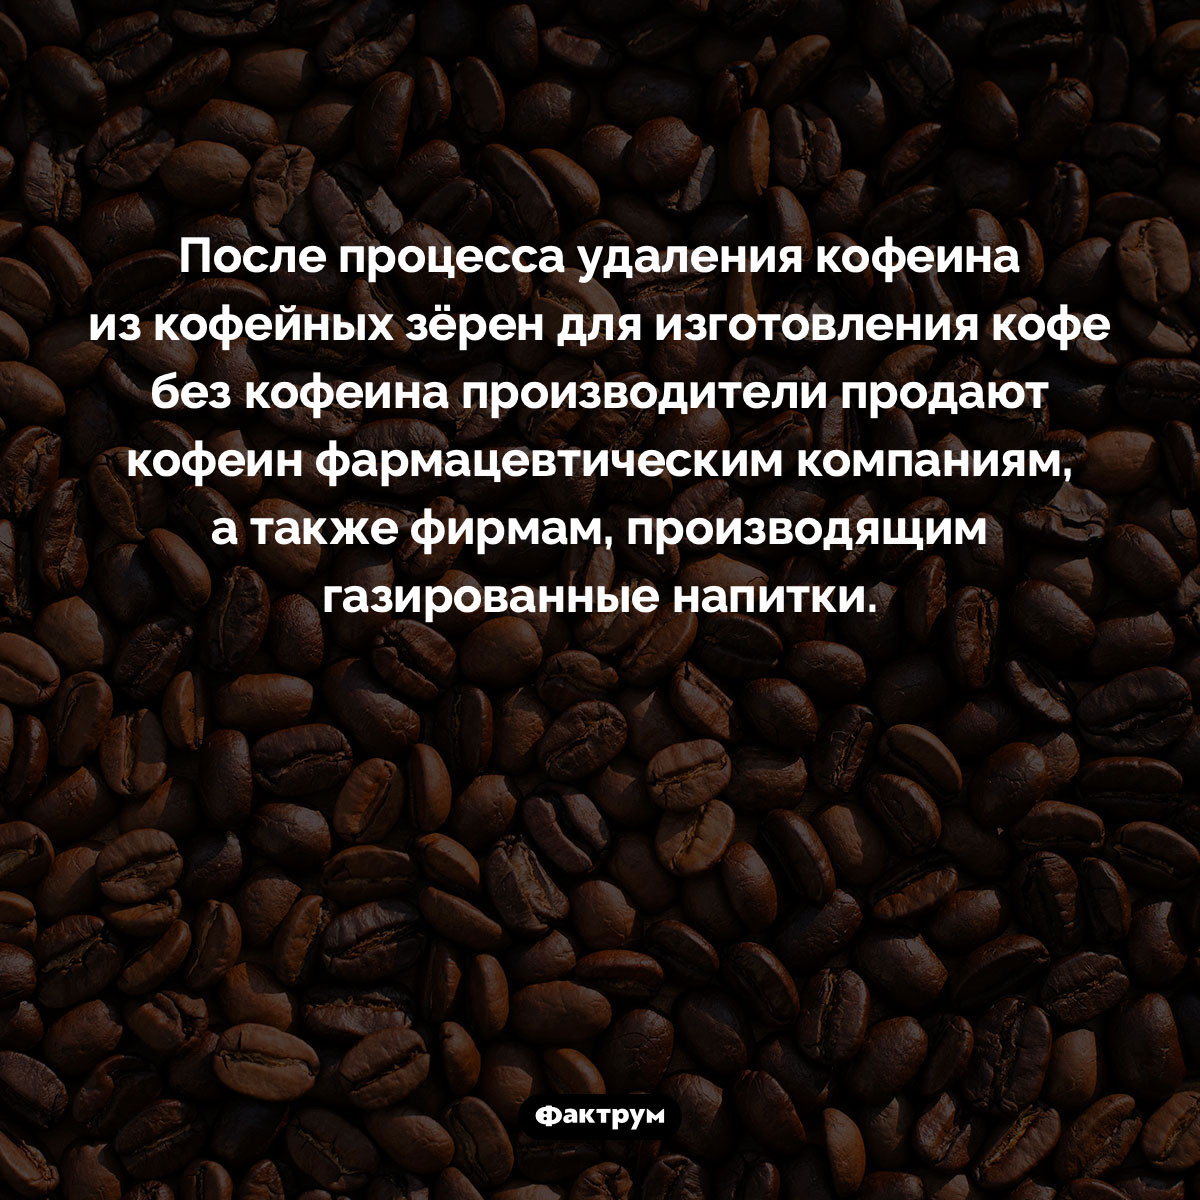 Куда девается кофеин из кофе без кофеина. После процесса удаления кофеина из кофейных зёрен для изготовления кофе без кофеина производители продают кофеин фармацевтическим компаниям, а также фирмам, производящим газированные напитки.